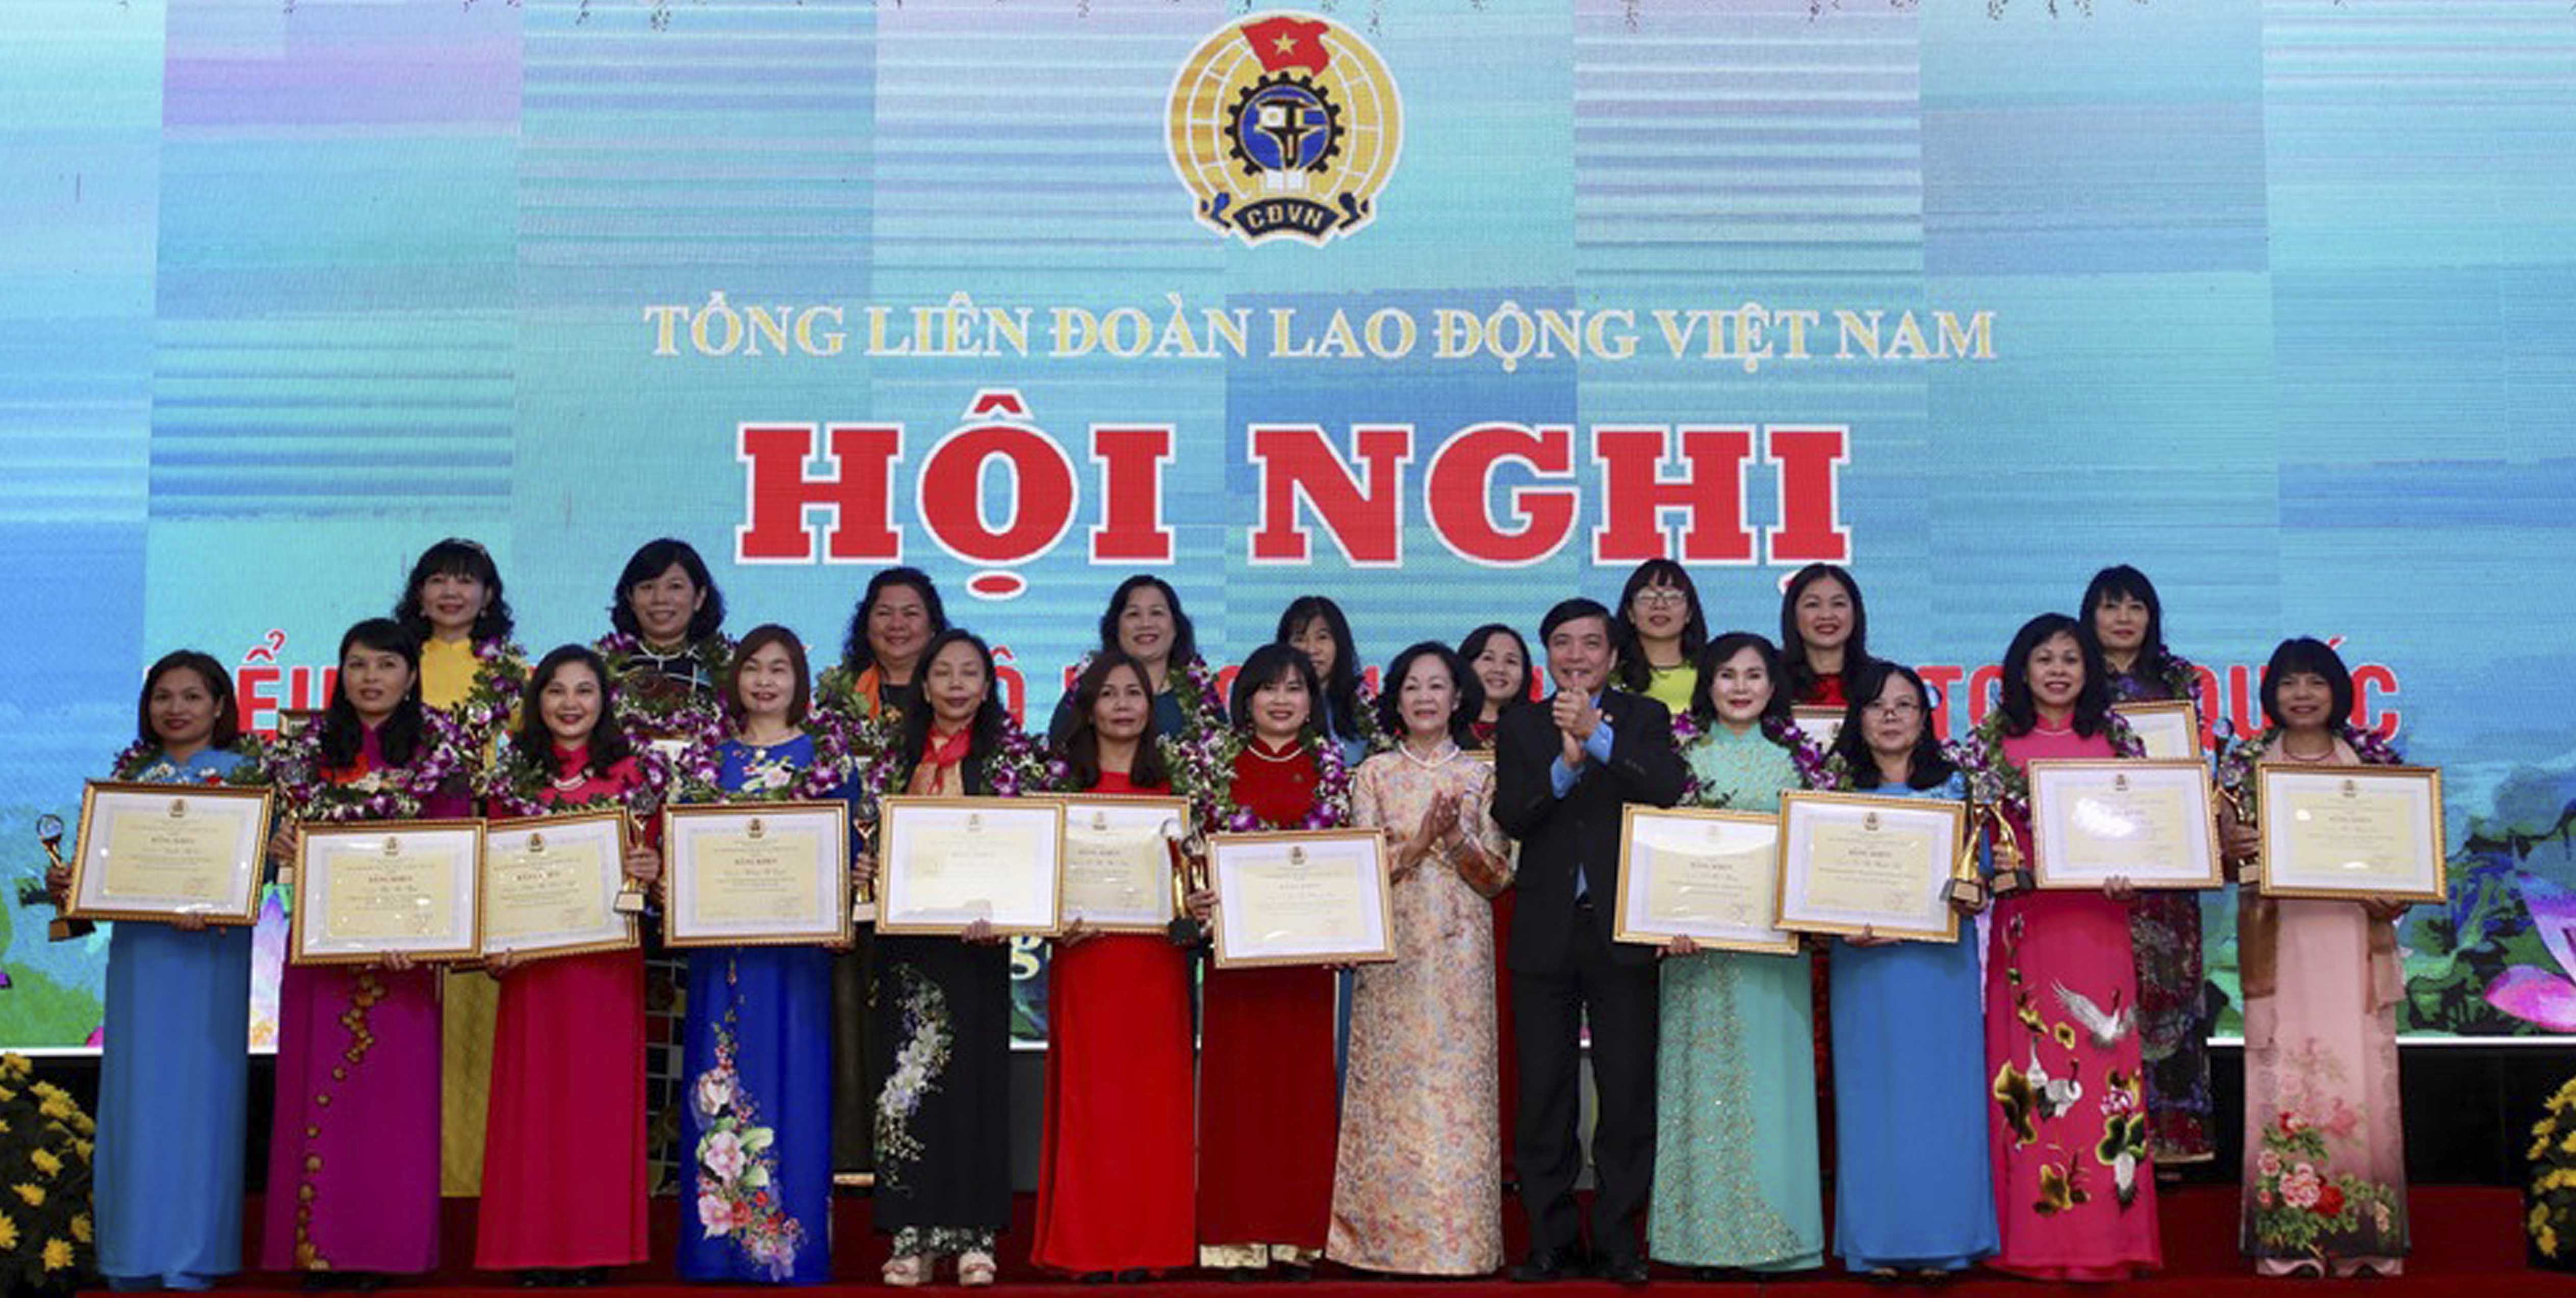 Hội nghị biểu dương cán bộ nữ công tiêu biểu toàn quốc năm 2019 do Tổng Liên đoàn Lao động Việt Nam tổ chức